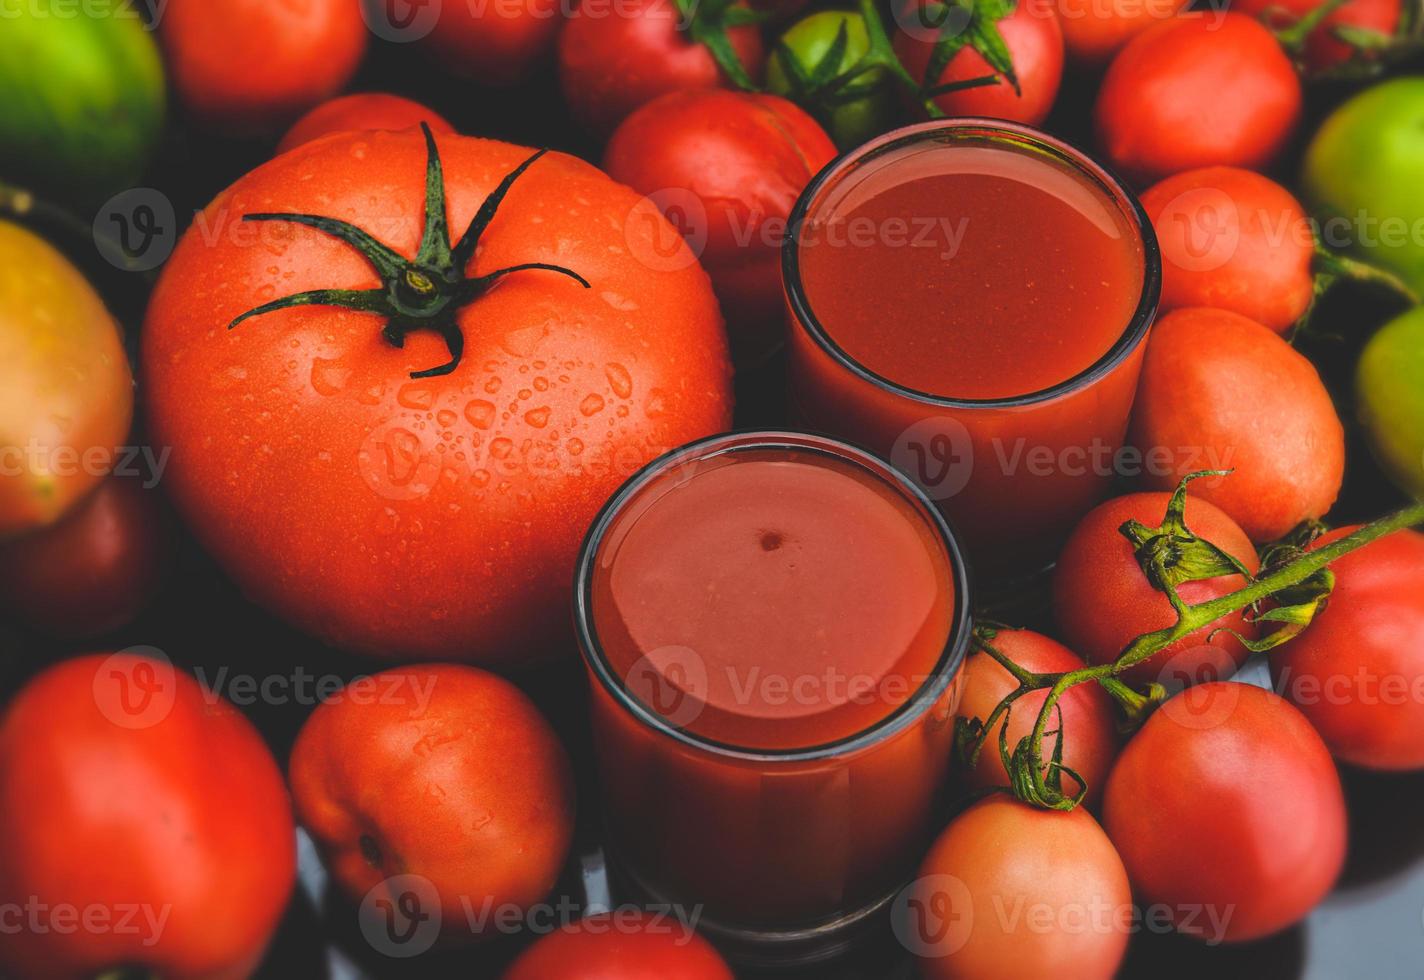 misture os tomates e os sucos no copo. foto